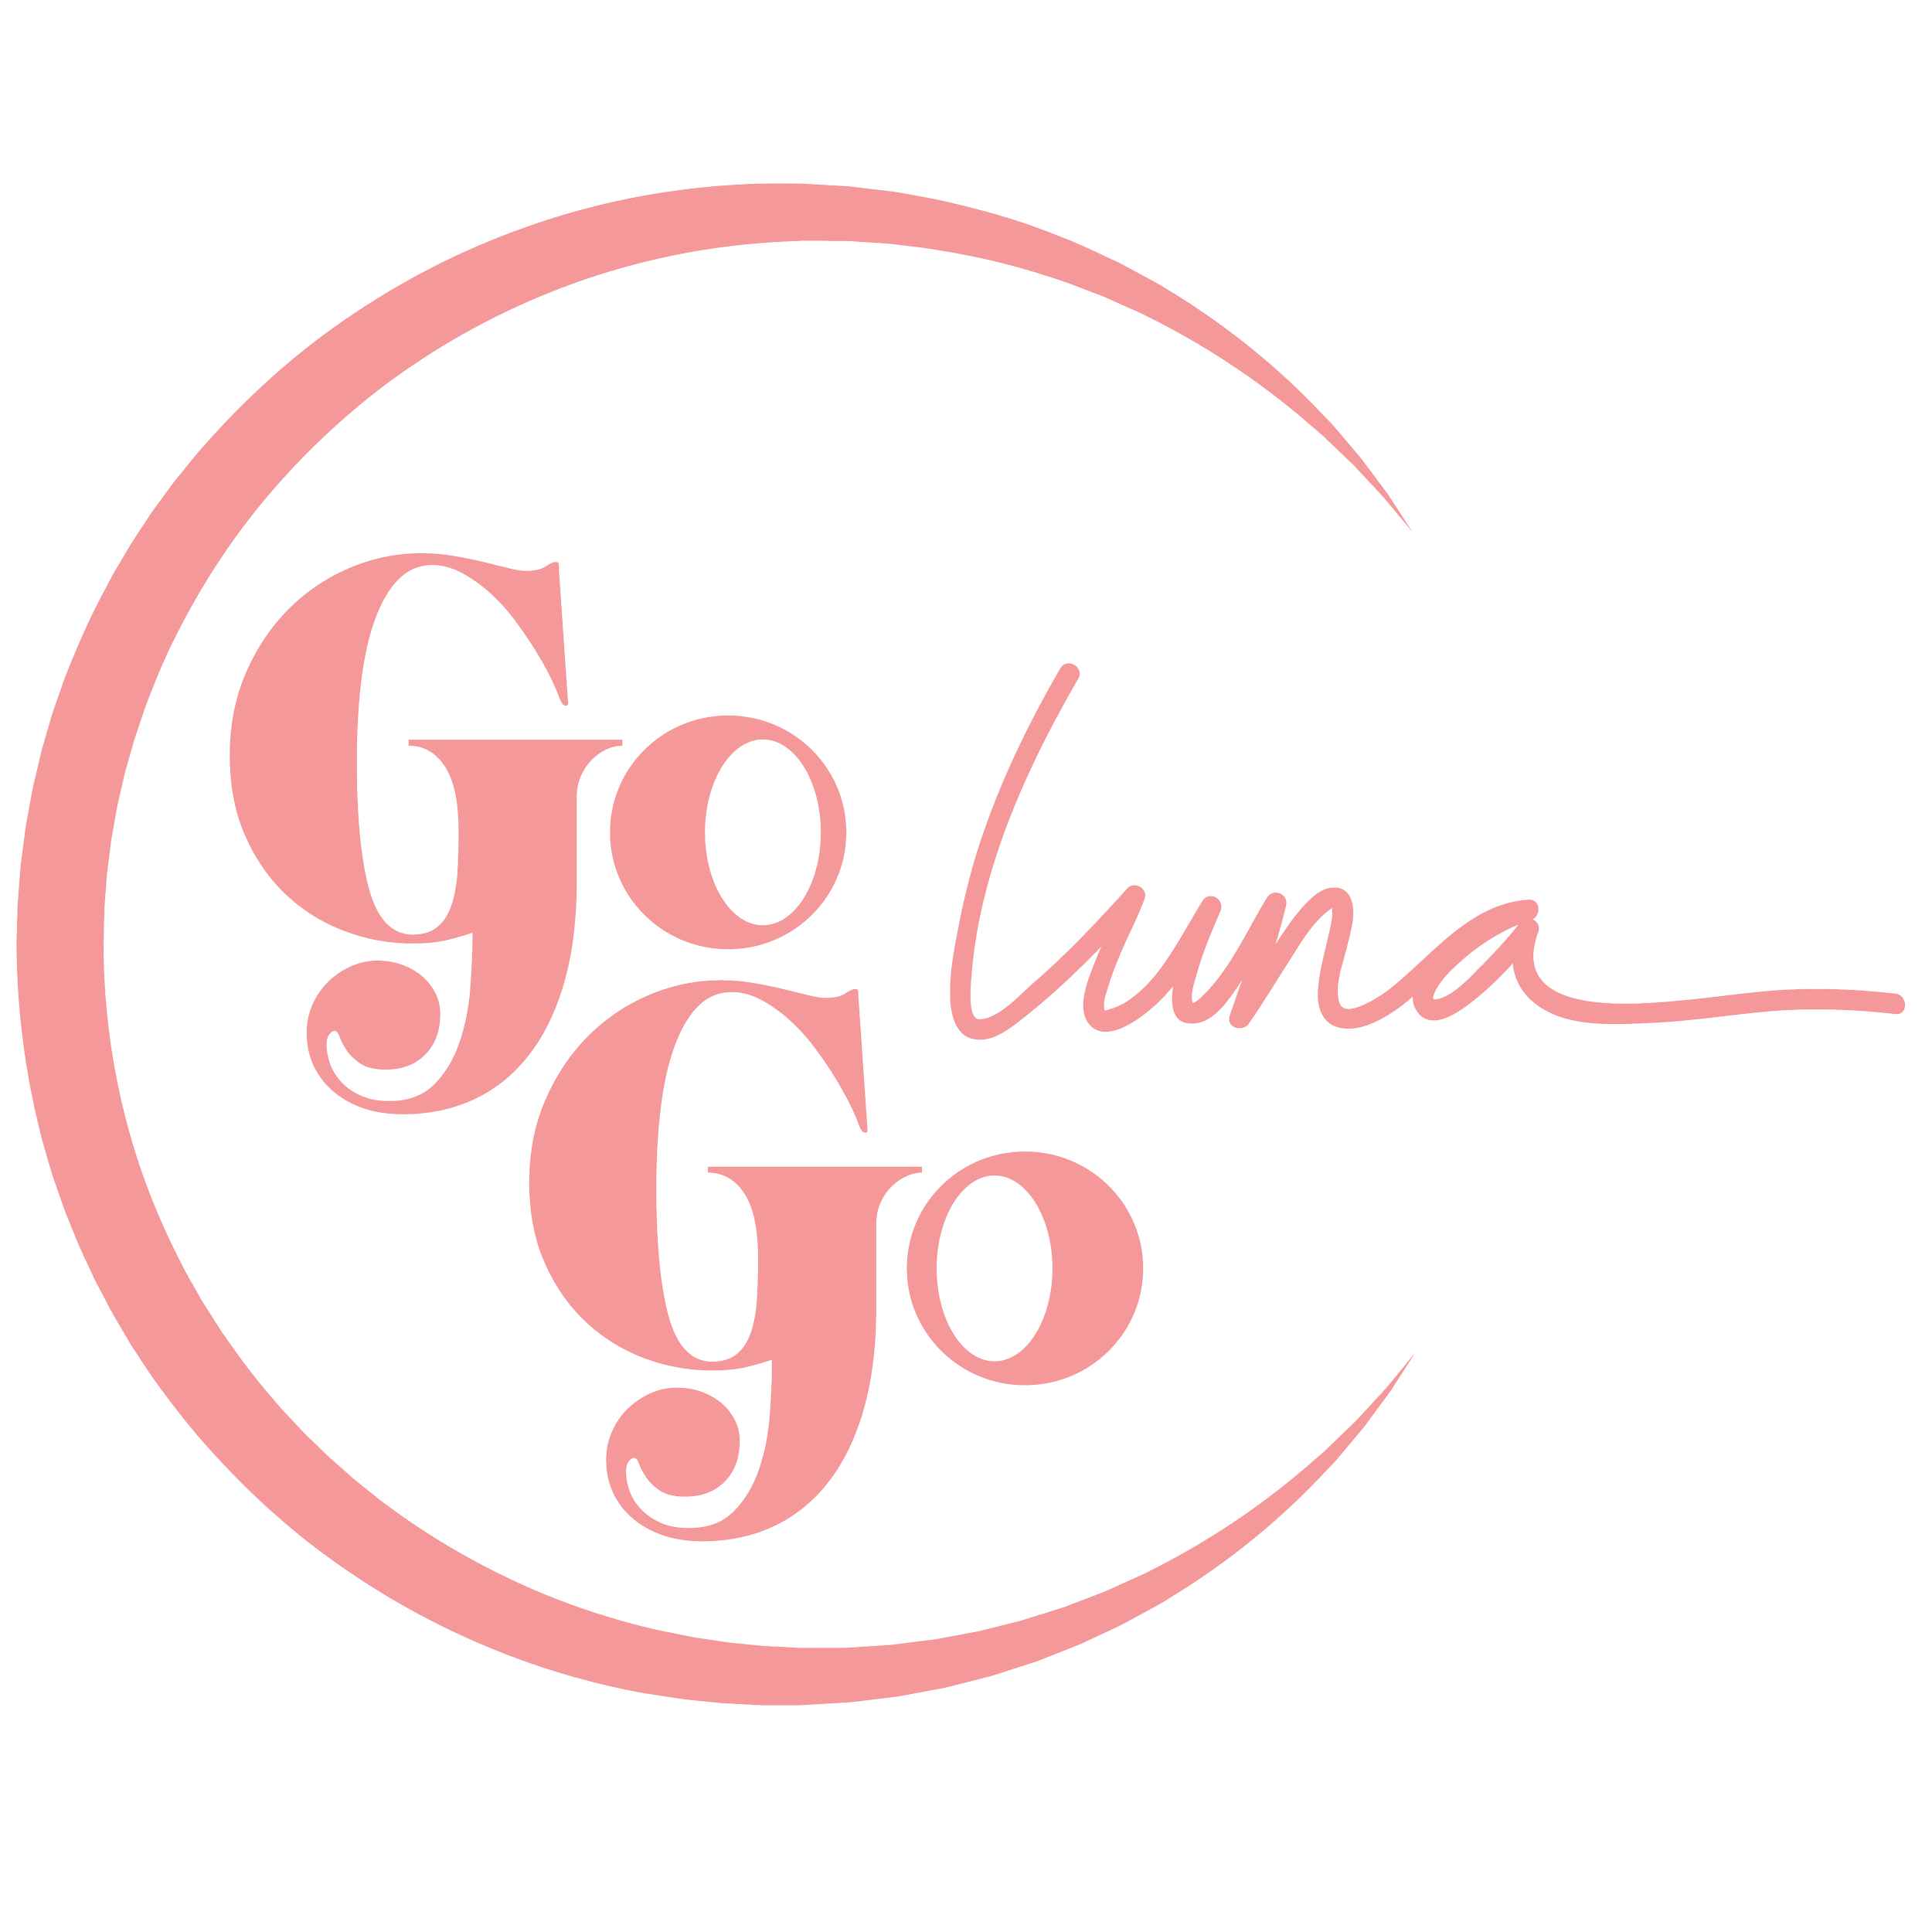 Go Go Luna